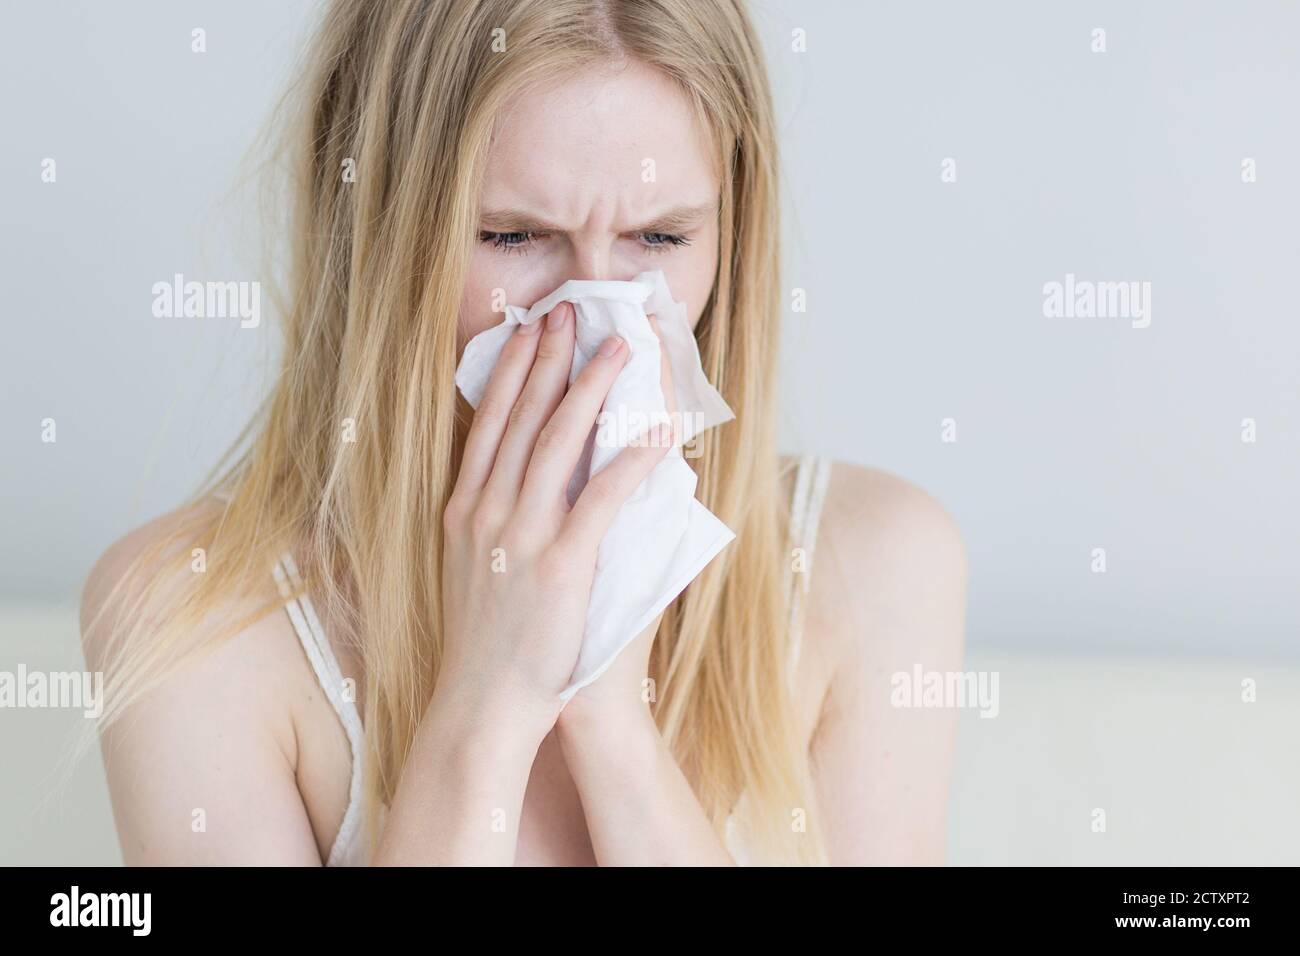 Kranke junge Frau mit einer Erkältung, die ihre Nase zu Hause in ein Seidenpapier bläst. Nahaufnahme. Stockfoto